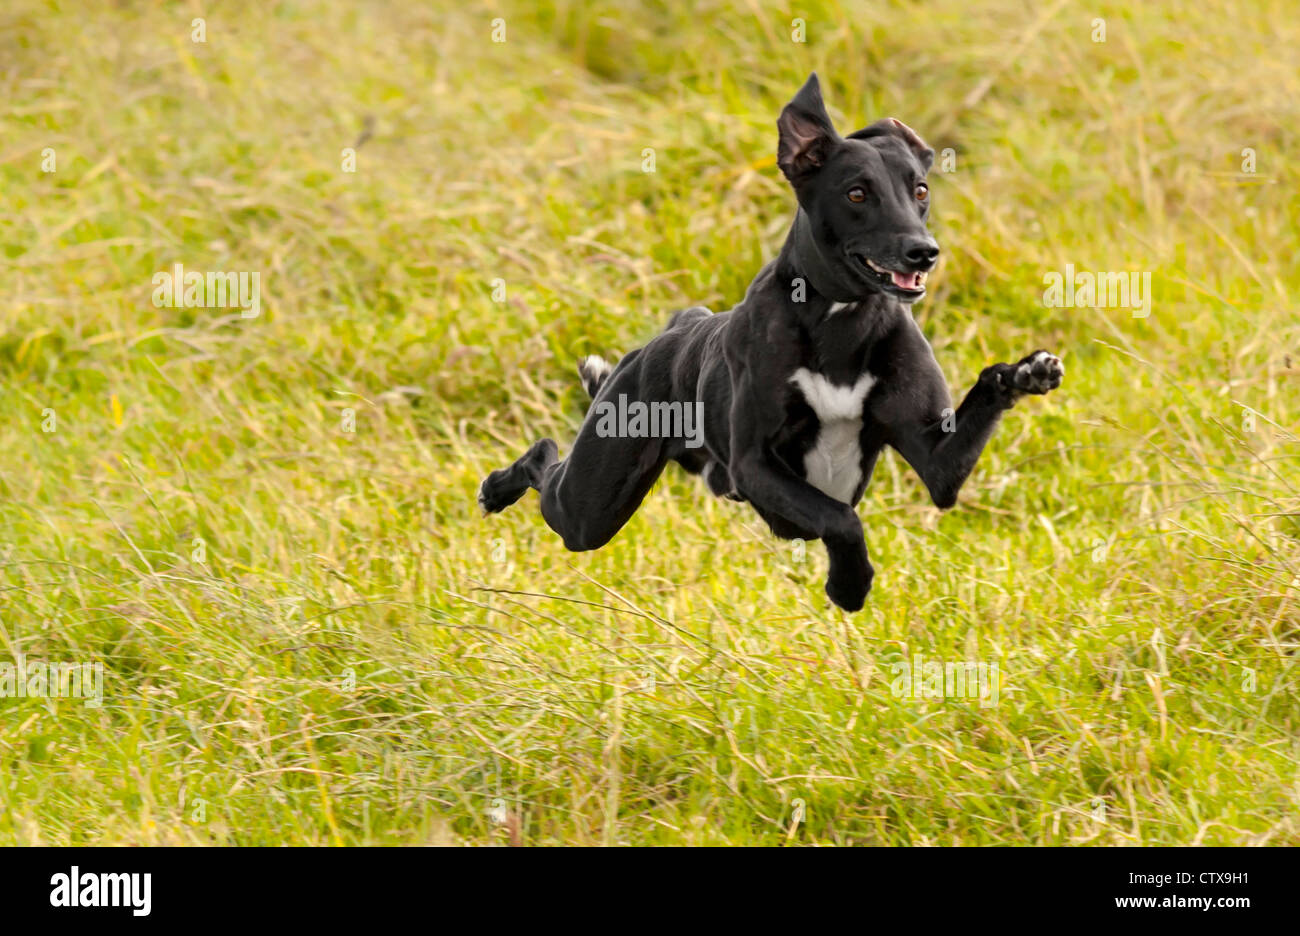 Hund läuft in einer Wiese mit allen vier Pfoten weg vom Boden, ist der Hund  ein Lurcher (Kreuzung zwischen einem Windhund und einem Whippet  Stockfotografie - Alamy